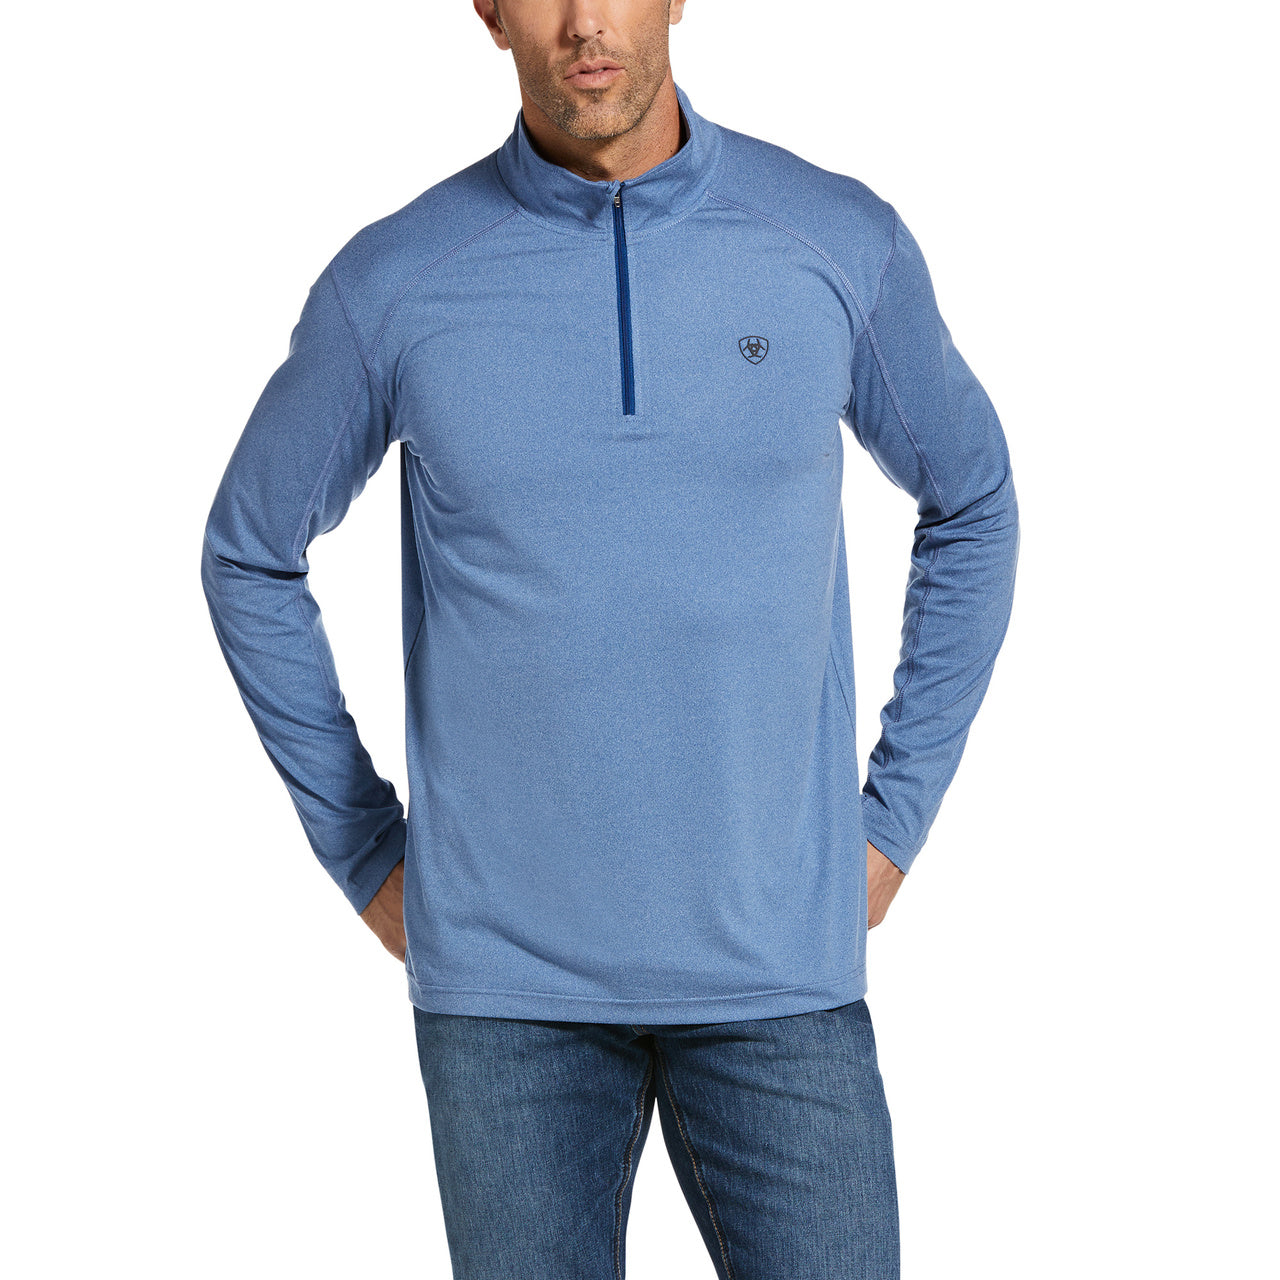 Ariat® Men's Cornell Quarter Zip Cobalt Baselayer Sweatshirt 10033223